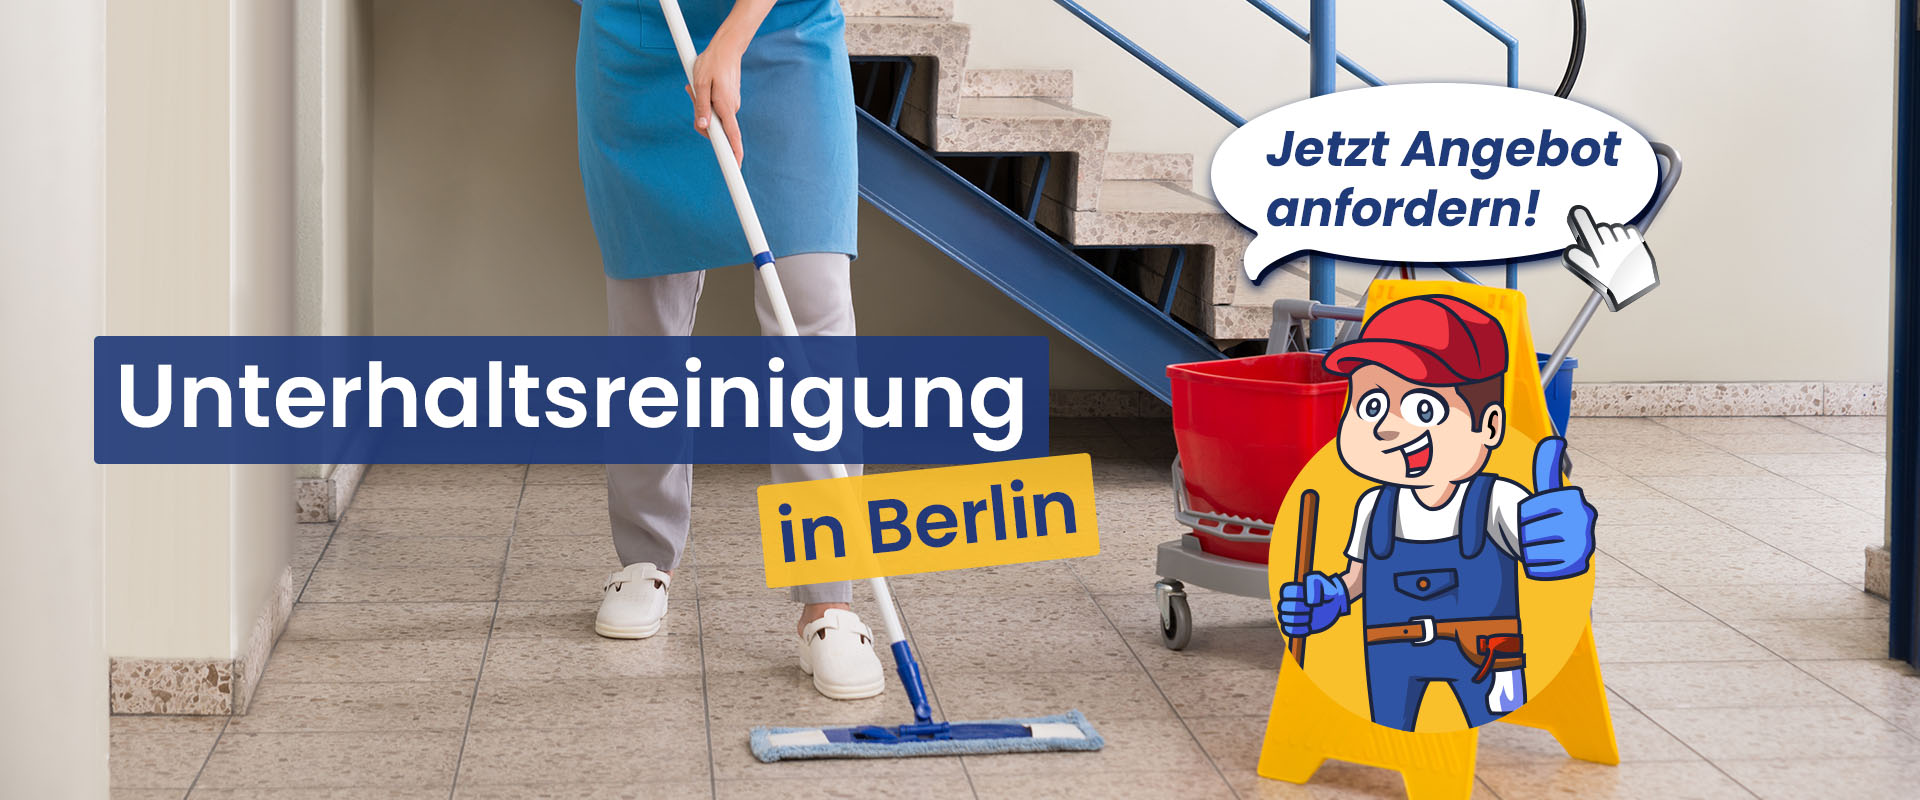 kotte-dienstleistungen-reinigungsarbeiten-putzdienst-berlin-heroshot-unterhaltsreinigung-desktop